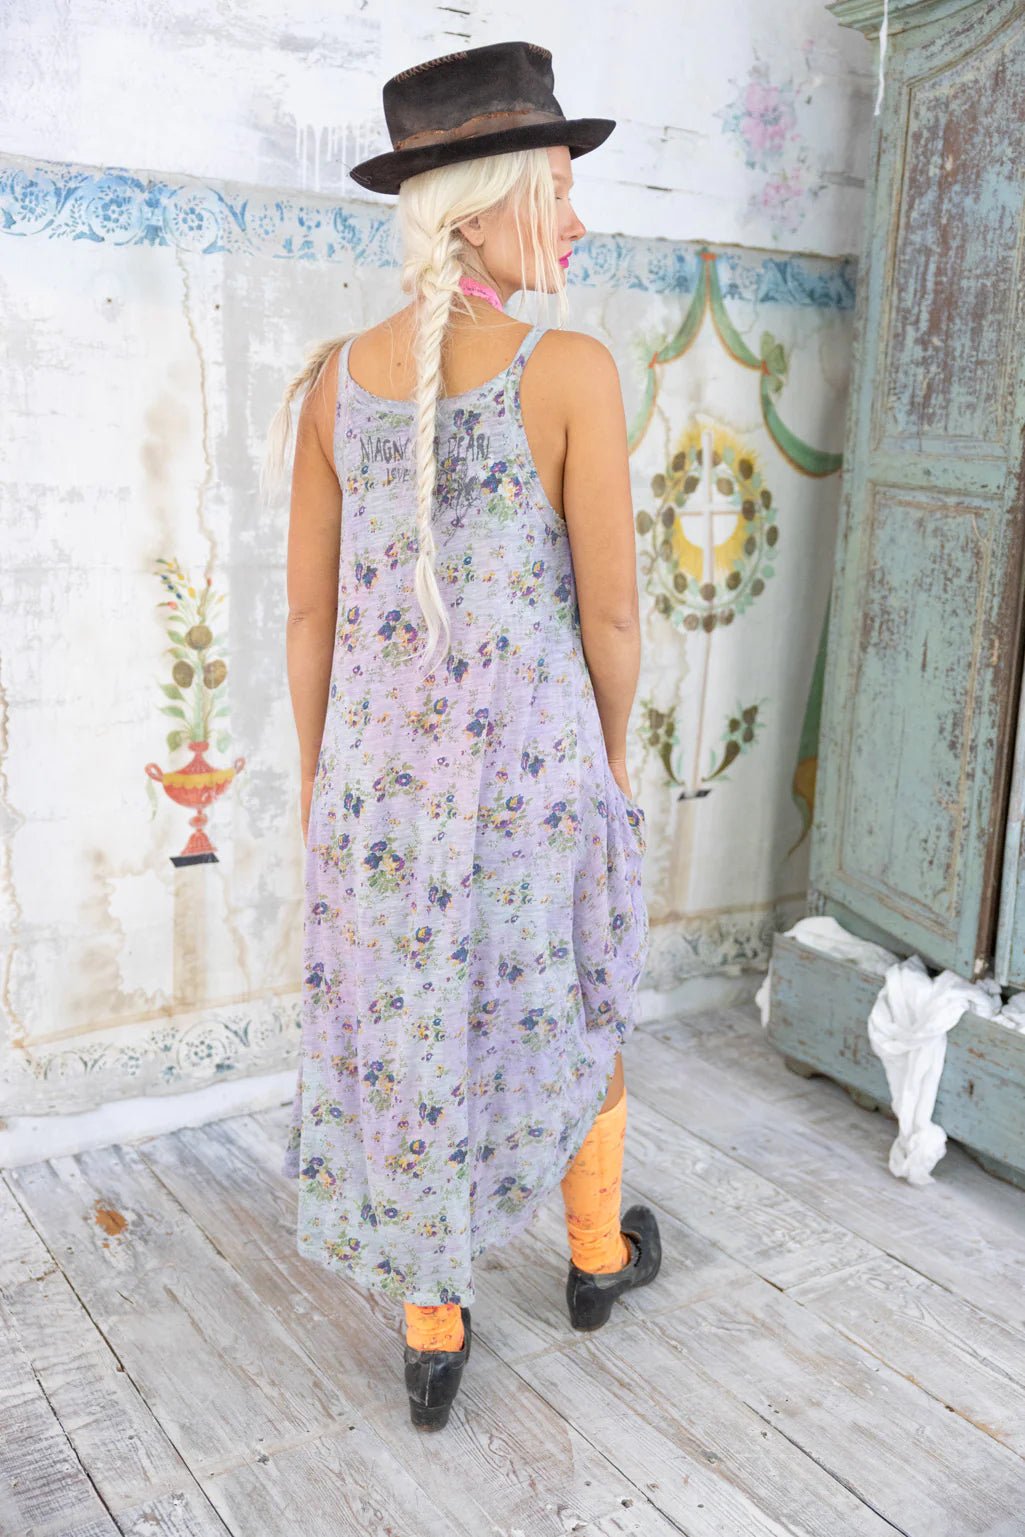 Floral Lana Tank Dress 1032 - Pressed FlowersMagnolia PearlDresses